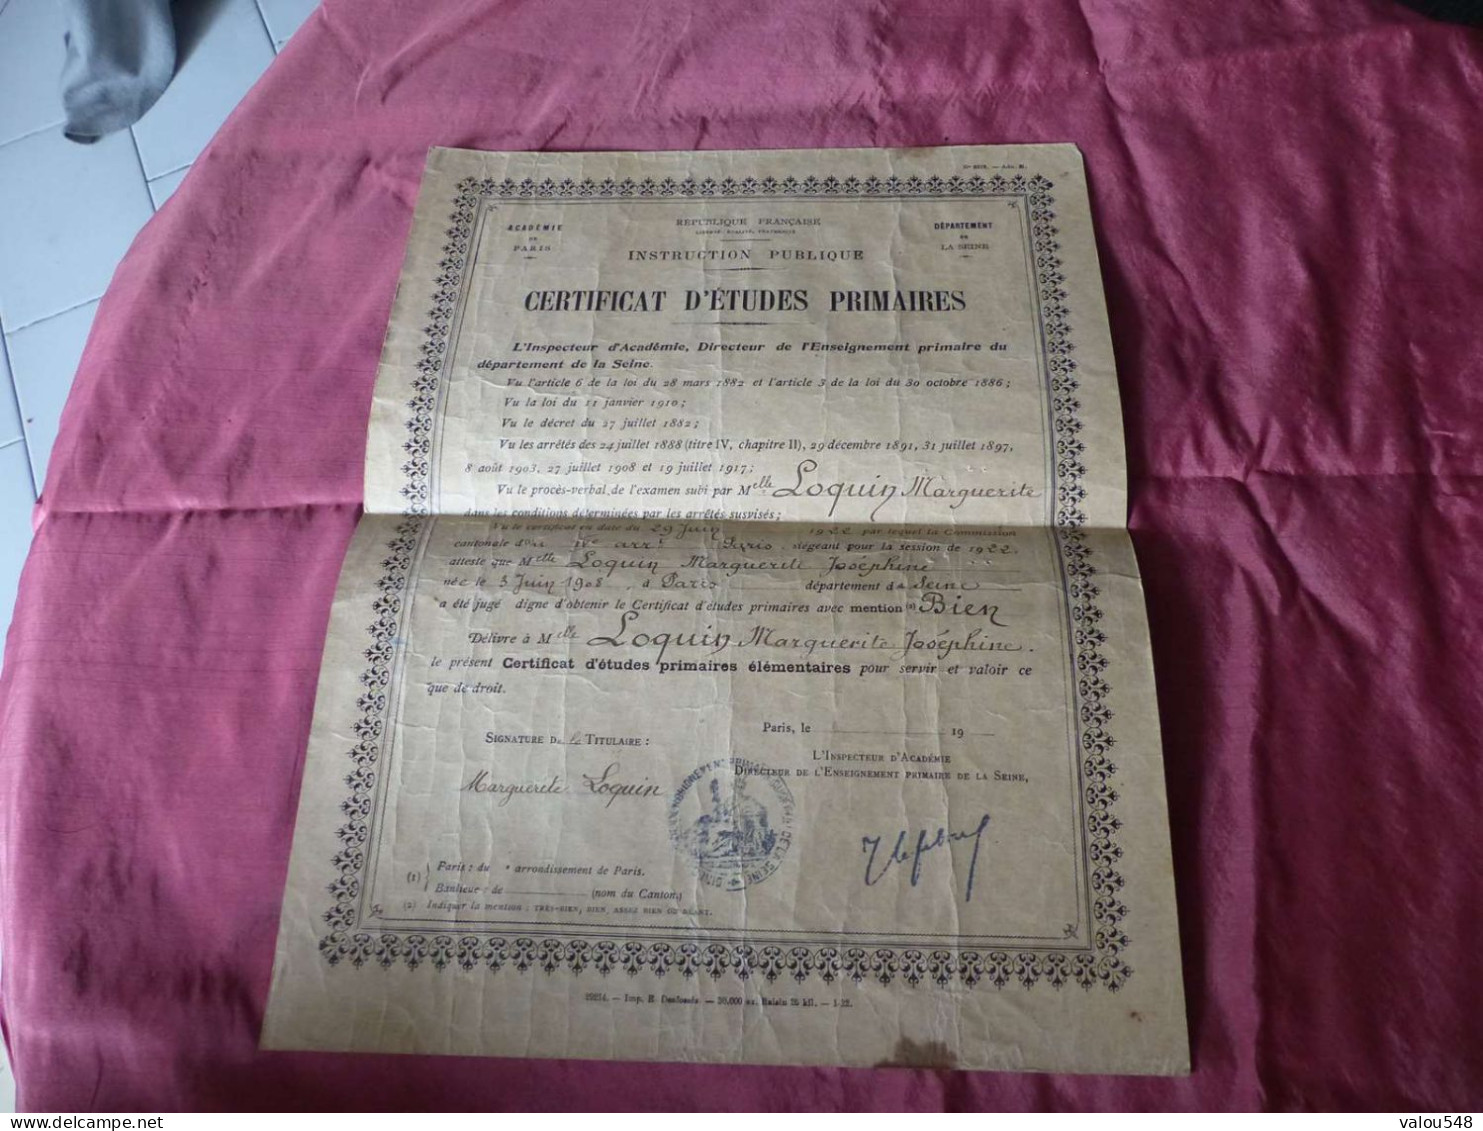 VP-9 , Diplôme , Certificat D'études Primaires, Académie De Paris, 29 Juin 1922 - Diplome Und Schulzeugnisse